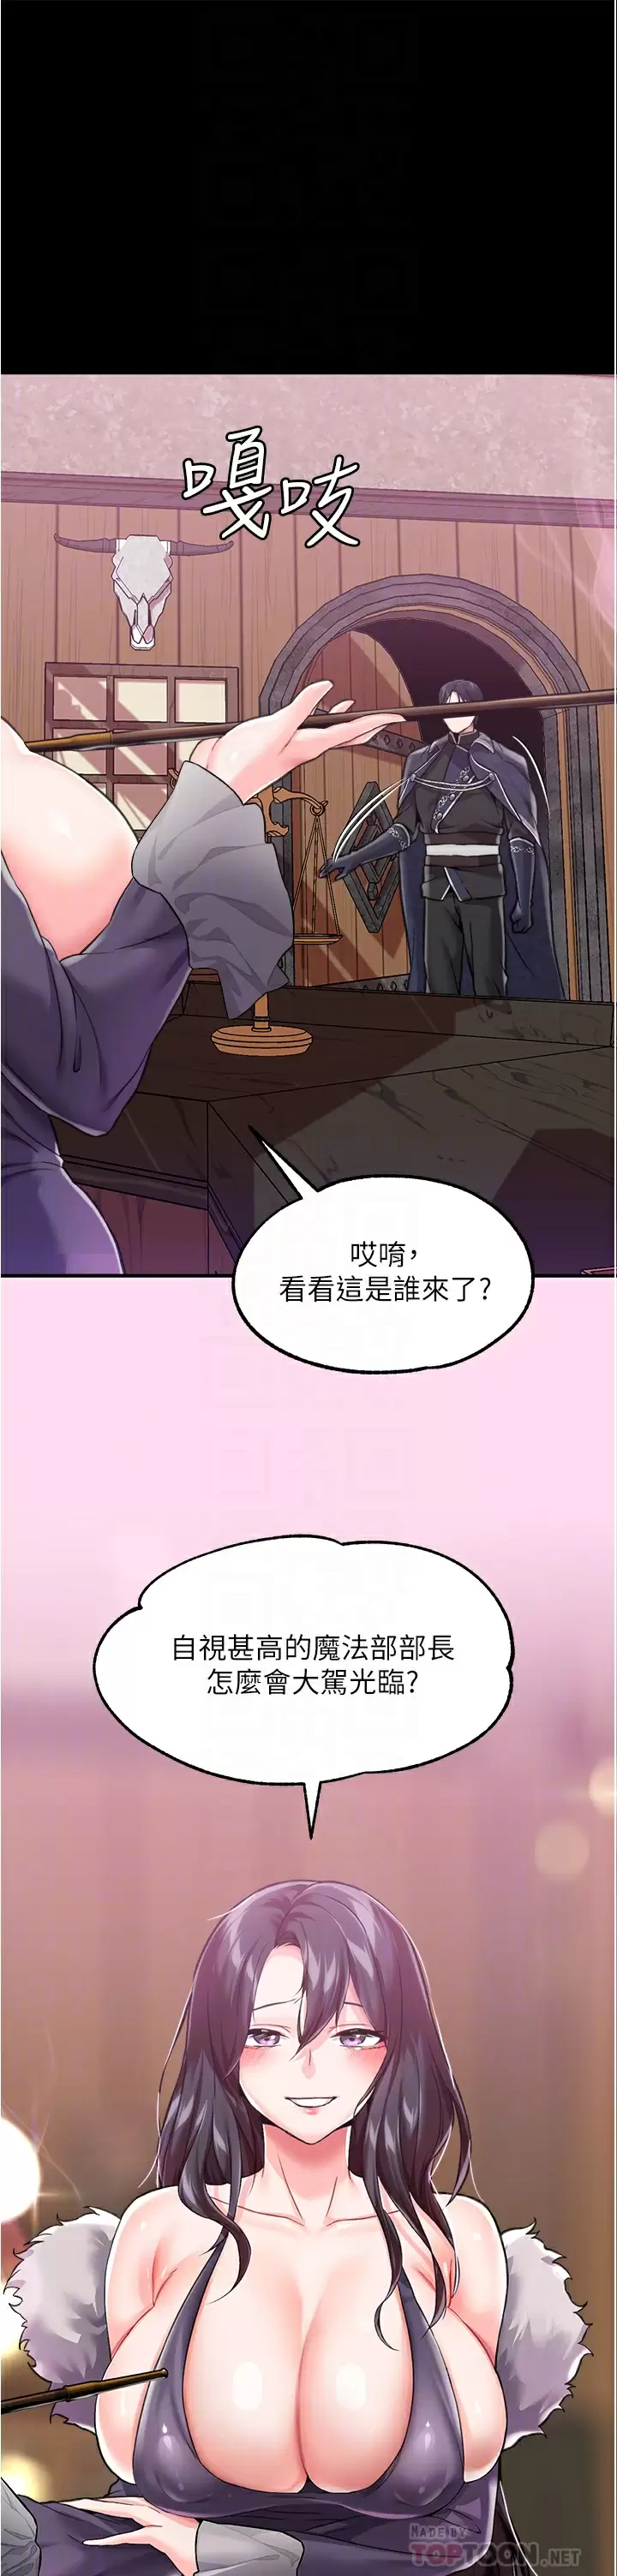 韩国污漫画 調教宮廷惡女 第8话给魔女的丰厚待遇 6